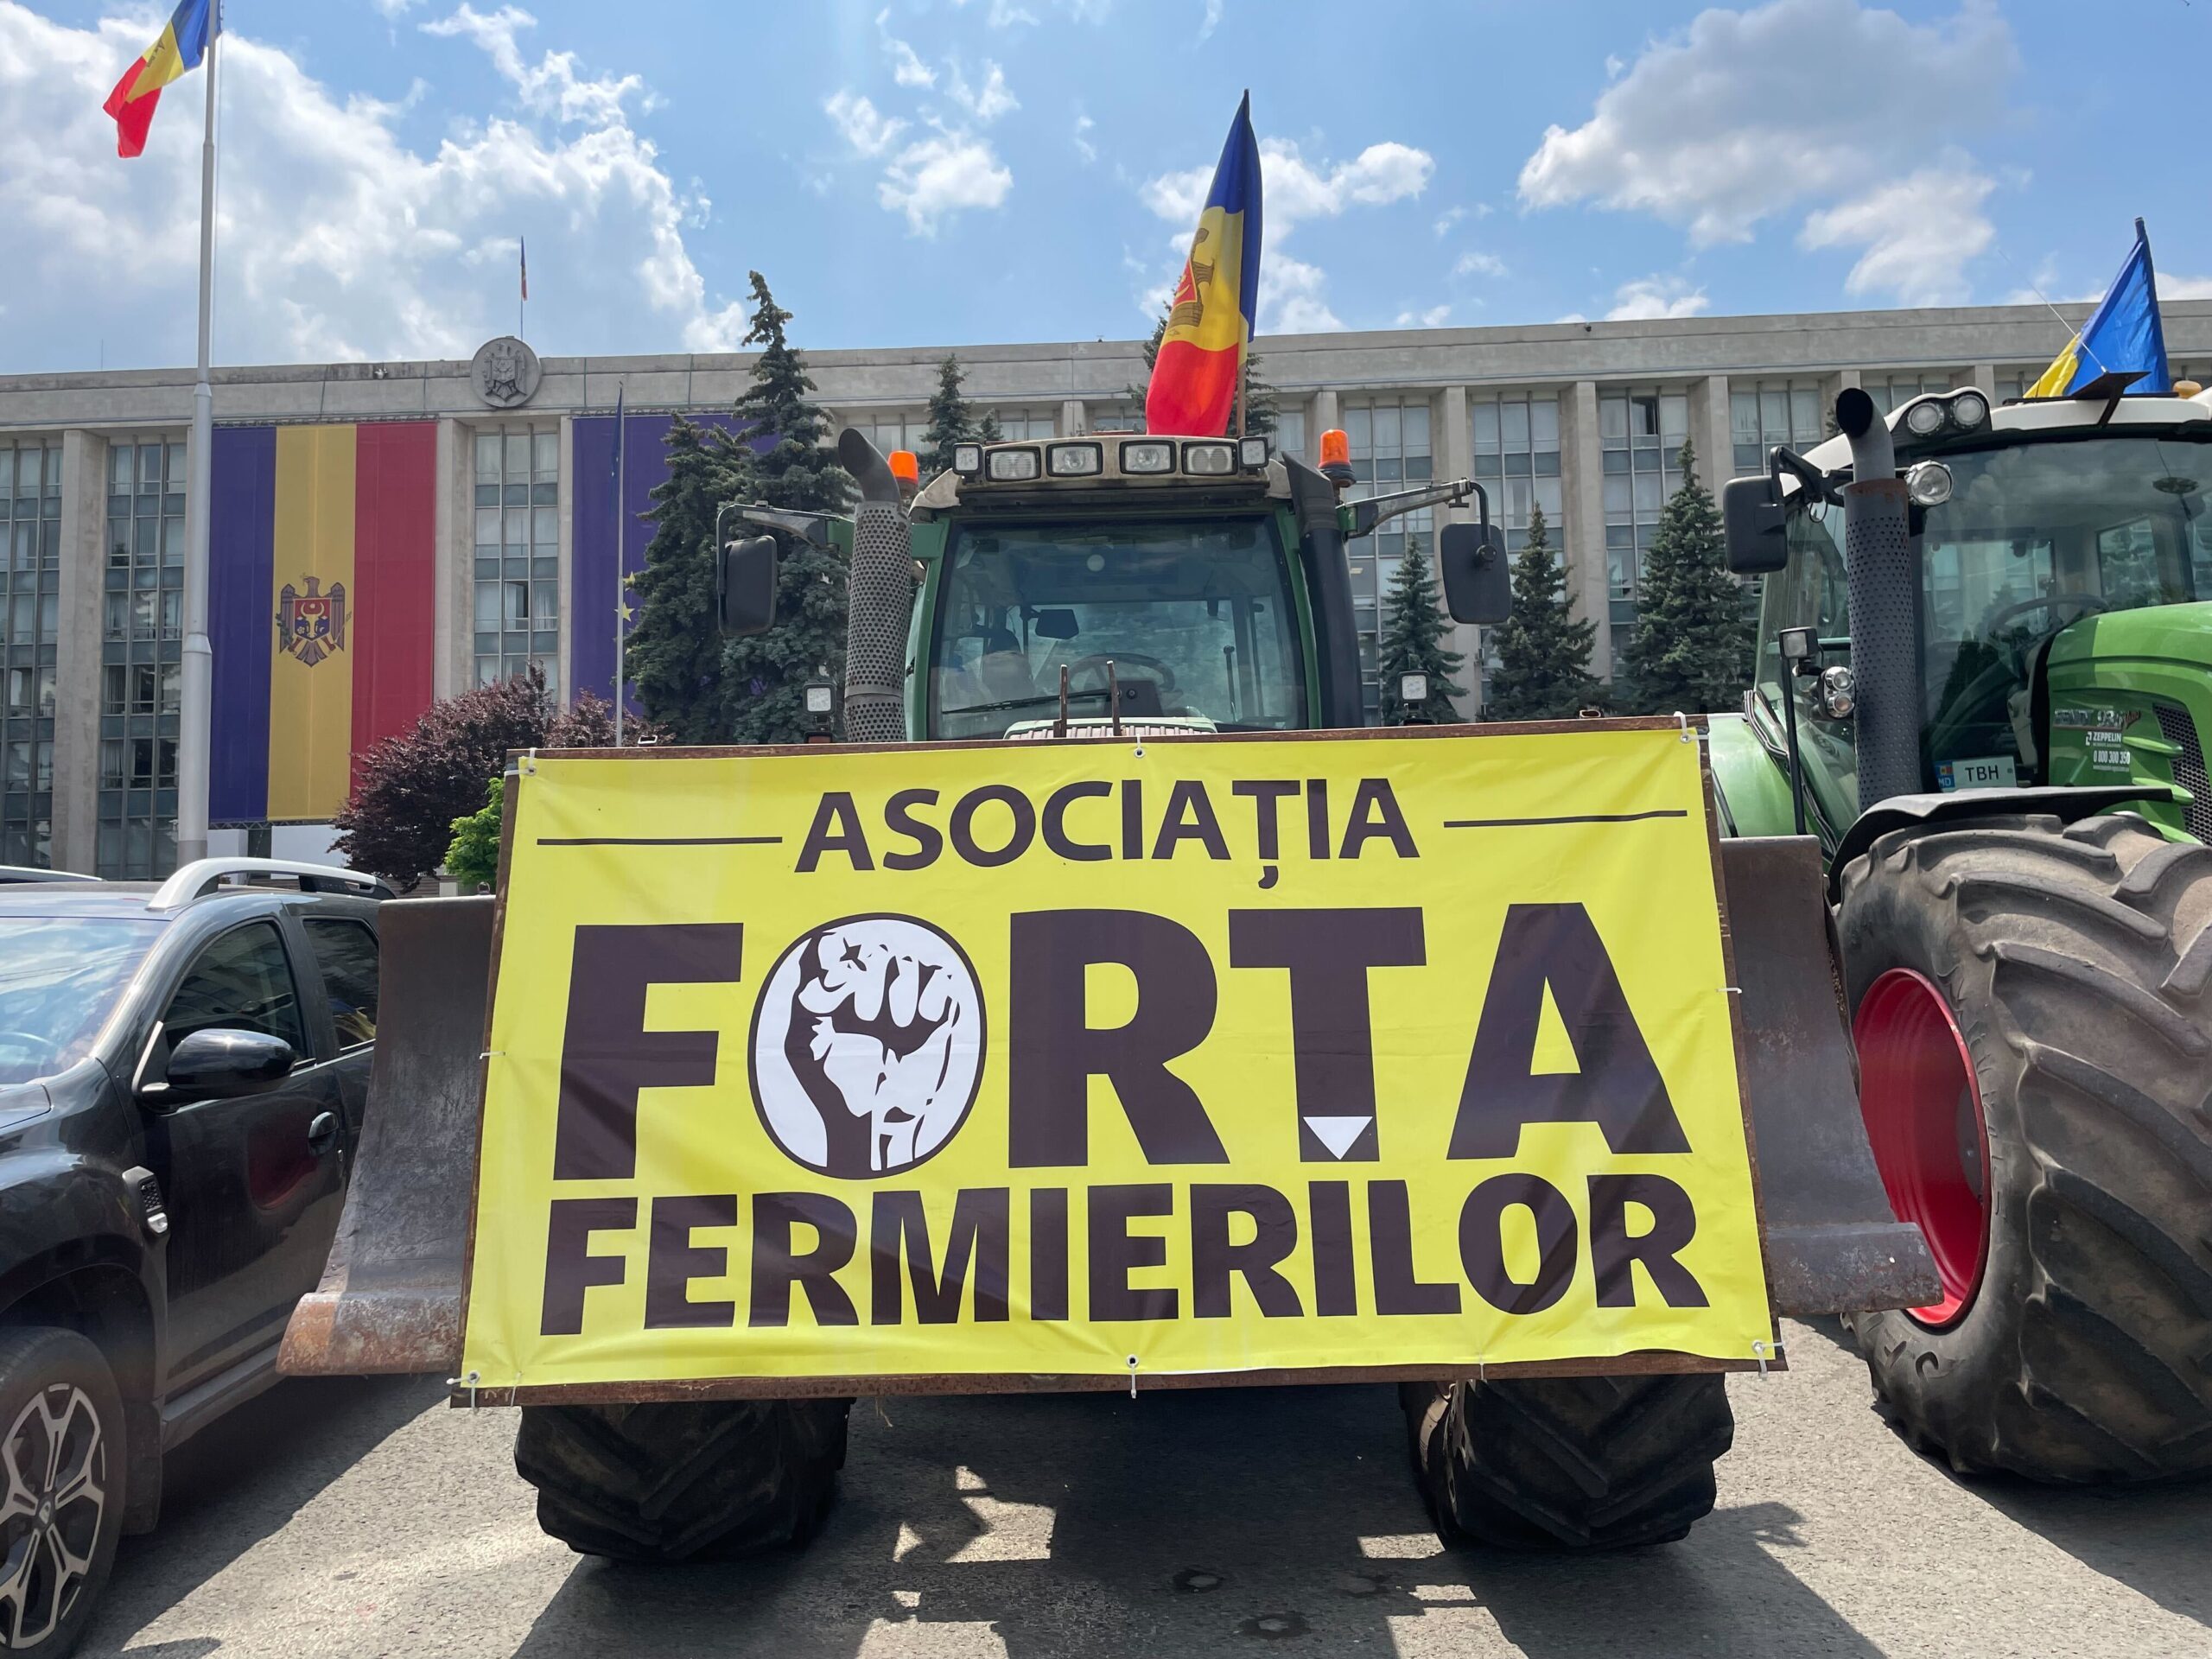 Fermierii care protestează la Chişinău cer să discute cu preşedinta Maia Sandu şi cu premierul Marcel Ciolacu, aflat în vizită